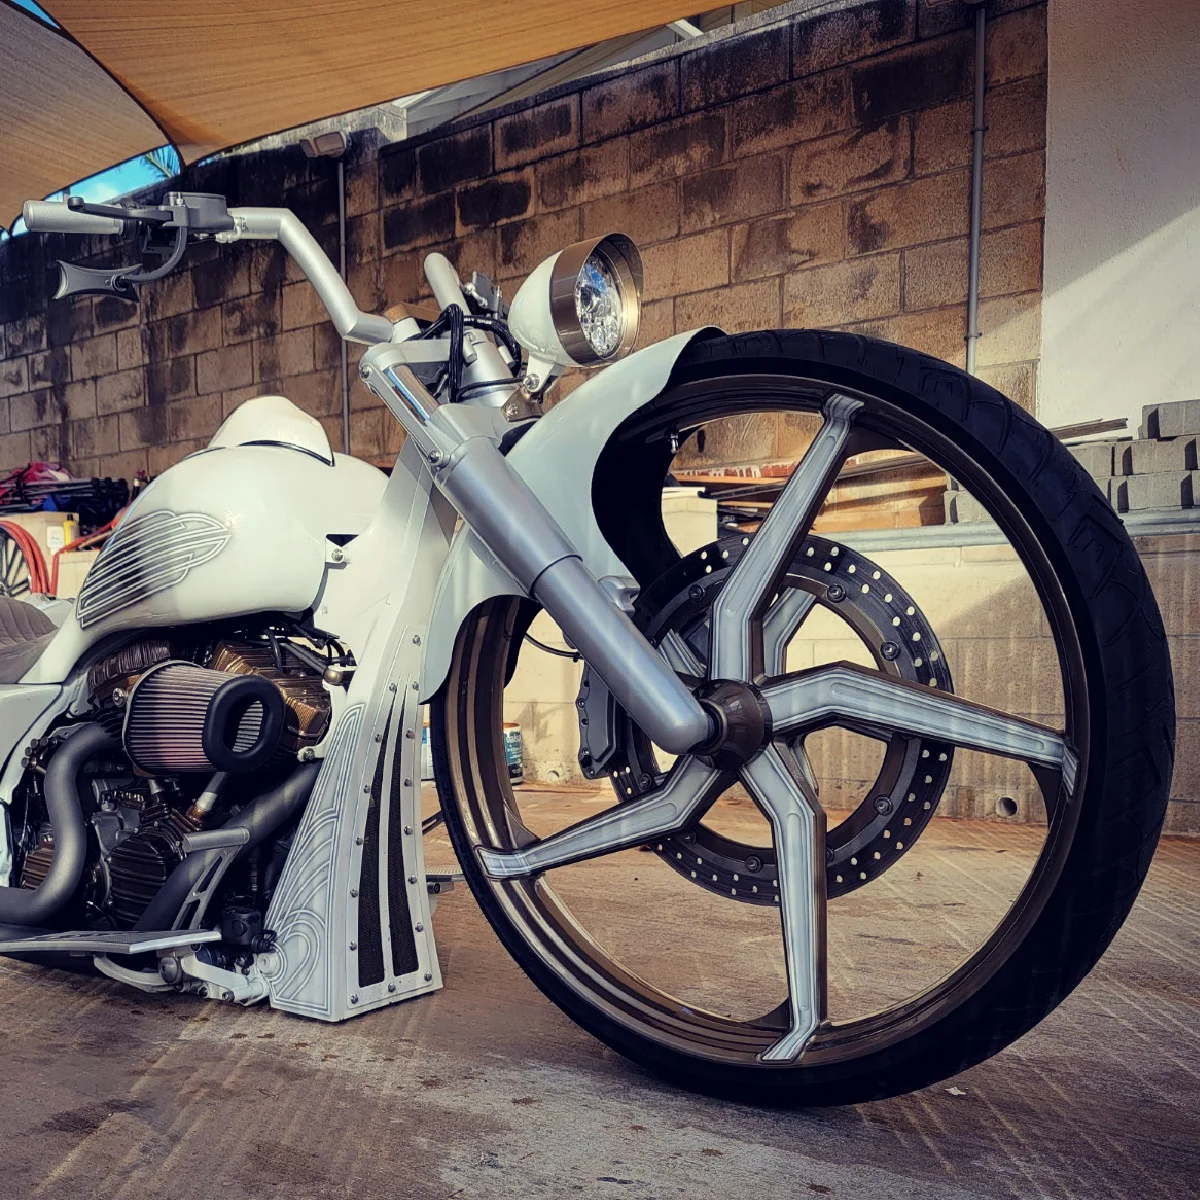 SMT OG.03 30 Inch Big wheel custom painted Harley bagger